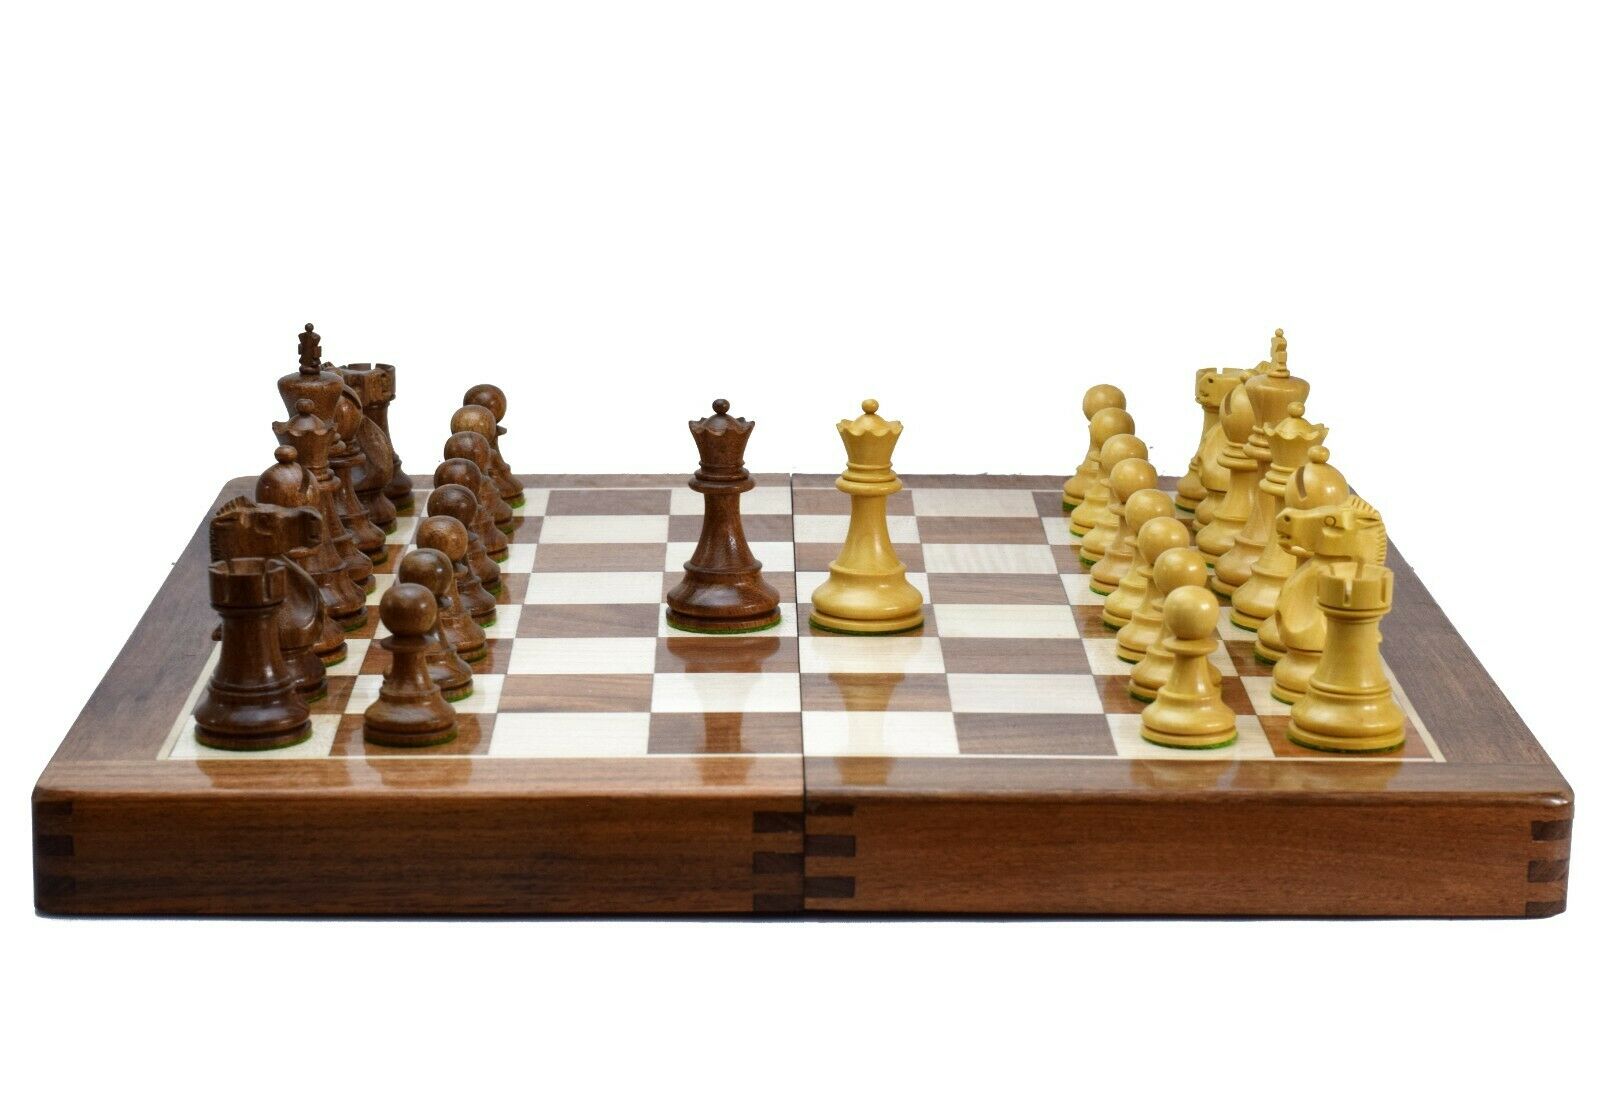 Fischer - Spassky - Campeonato Mundial de Xadrez 1972 - Folhassoltas